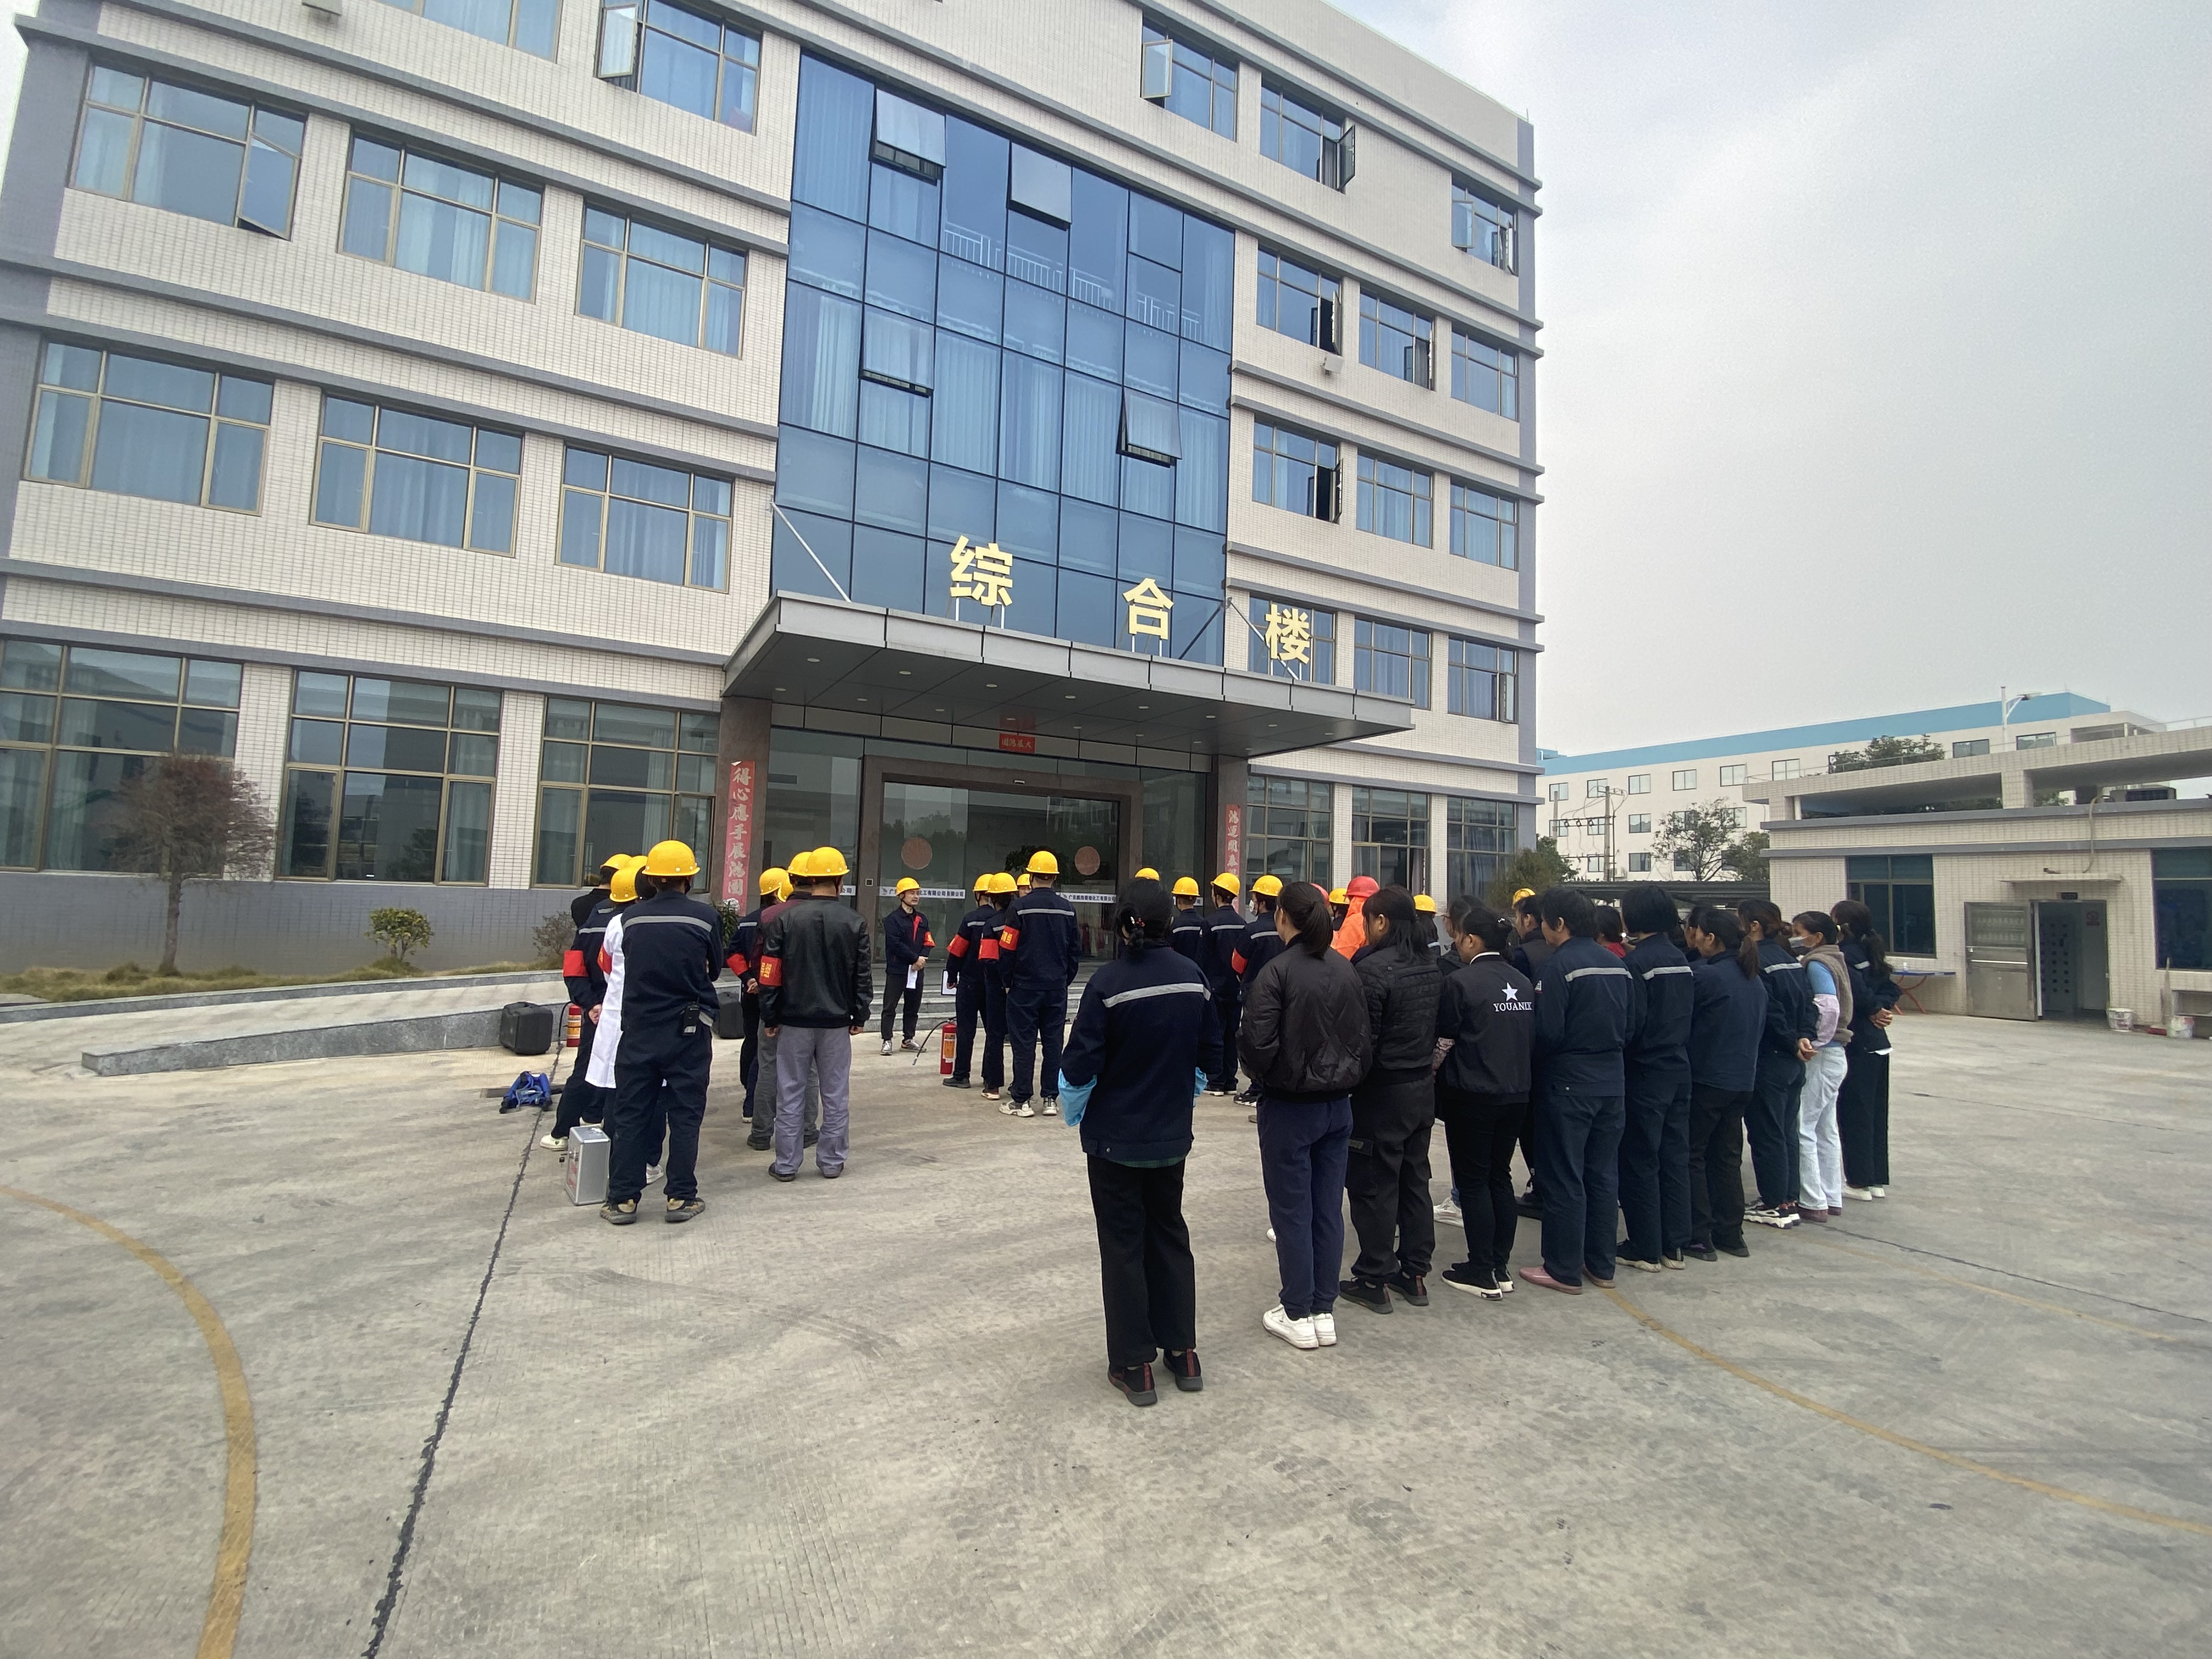 El simulacro de incendio formal de Pengwei丨 se llevó a cabo el 12 de diciembre de 2021